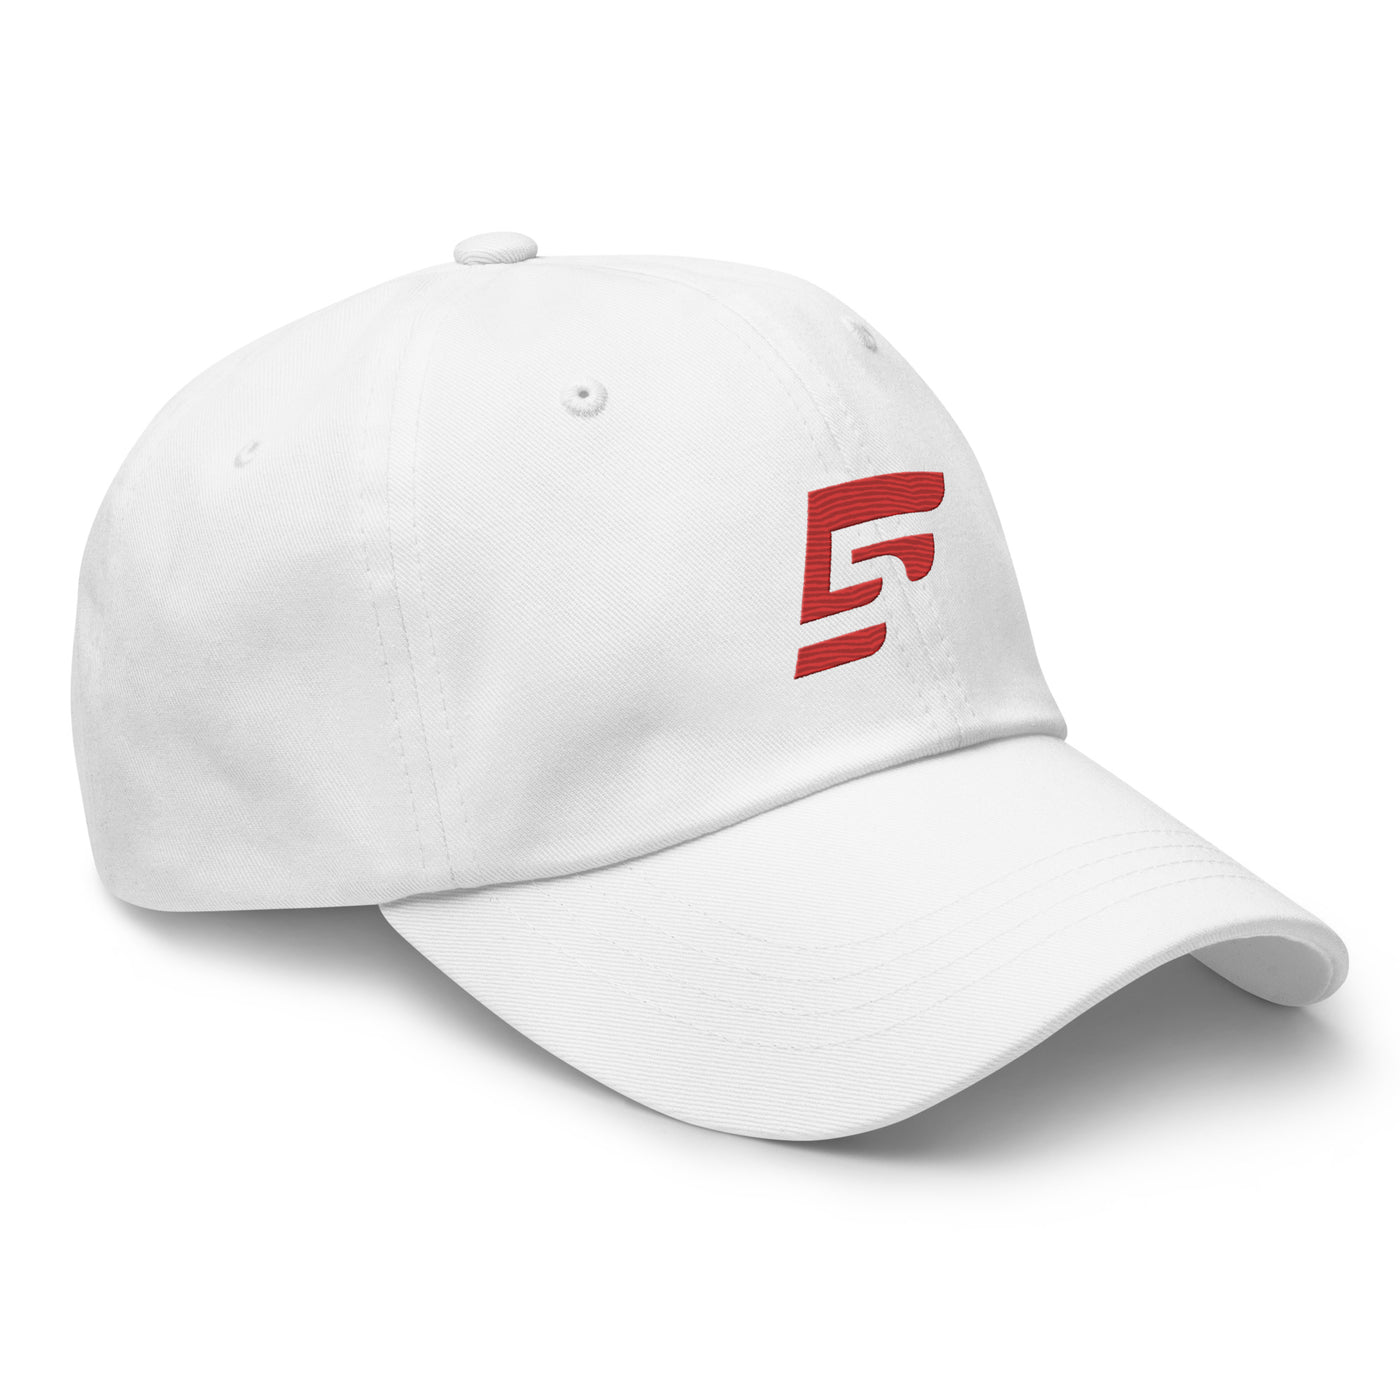 F5 Esports Dad hat